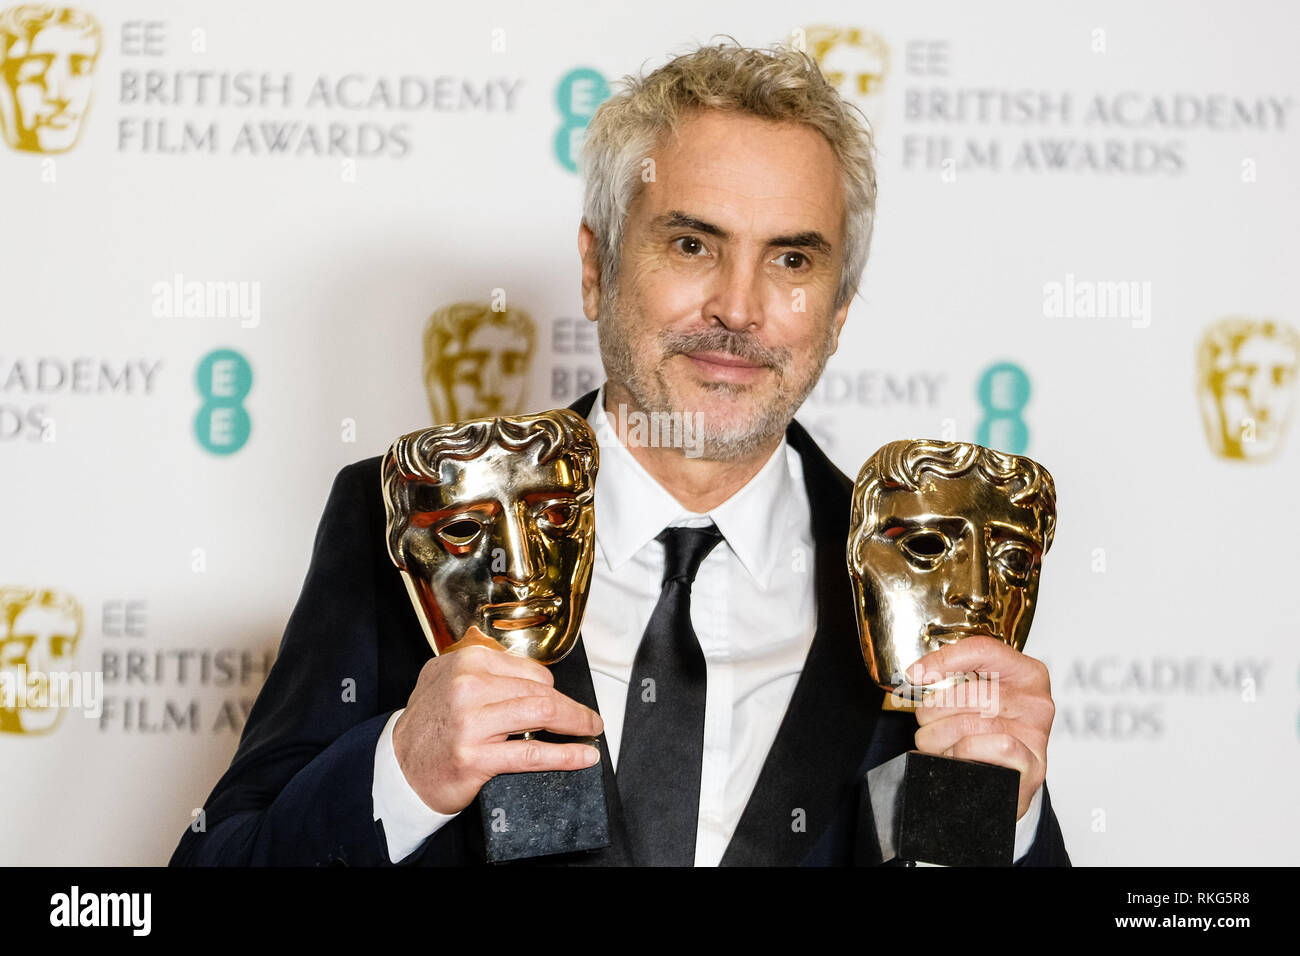 Alfonso Cuarón stellt Backstage in der British Academy Film Awards am Sonntag, 10. Februar 2019 in der Royal Albert Hall, London. Alfonso Cuarón mit seinem BAFTA Awards für den Besten Film Roma. Stockfoto